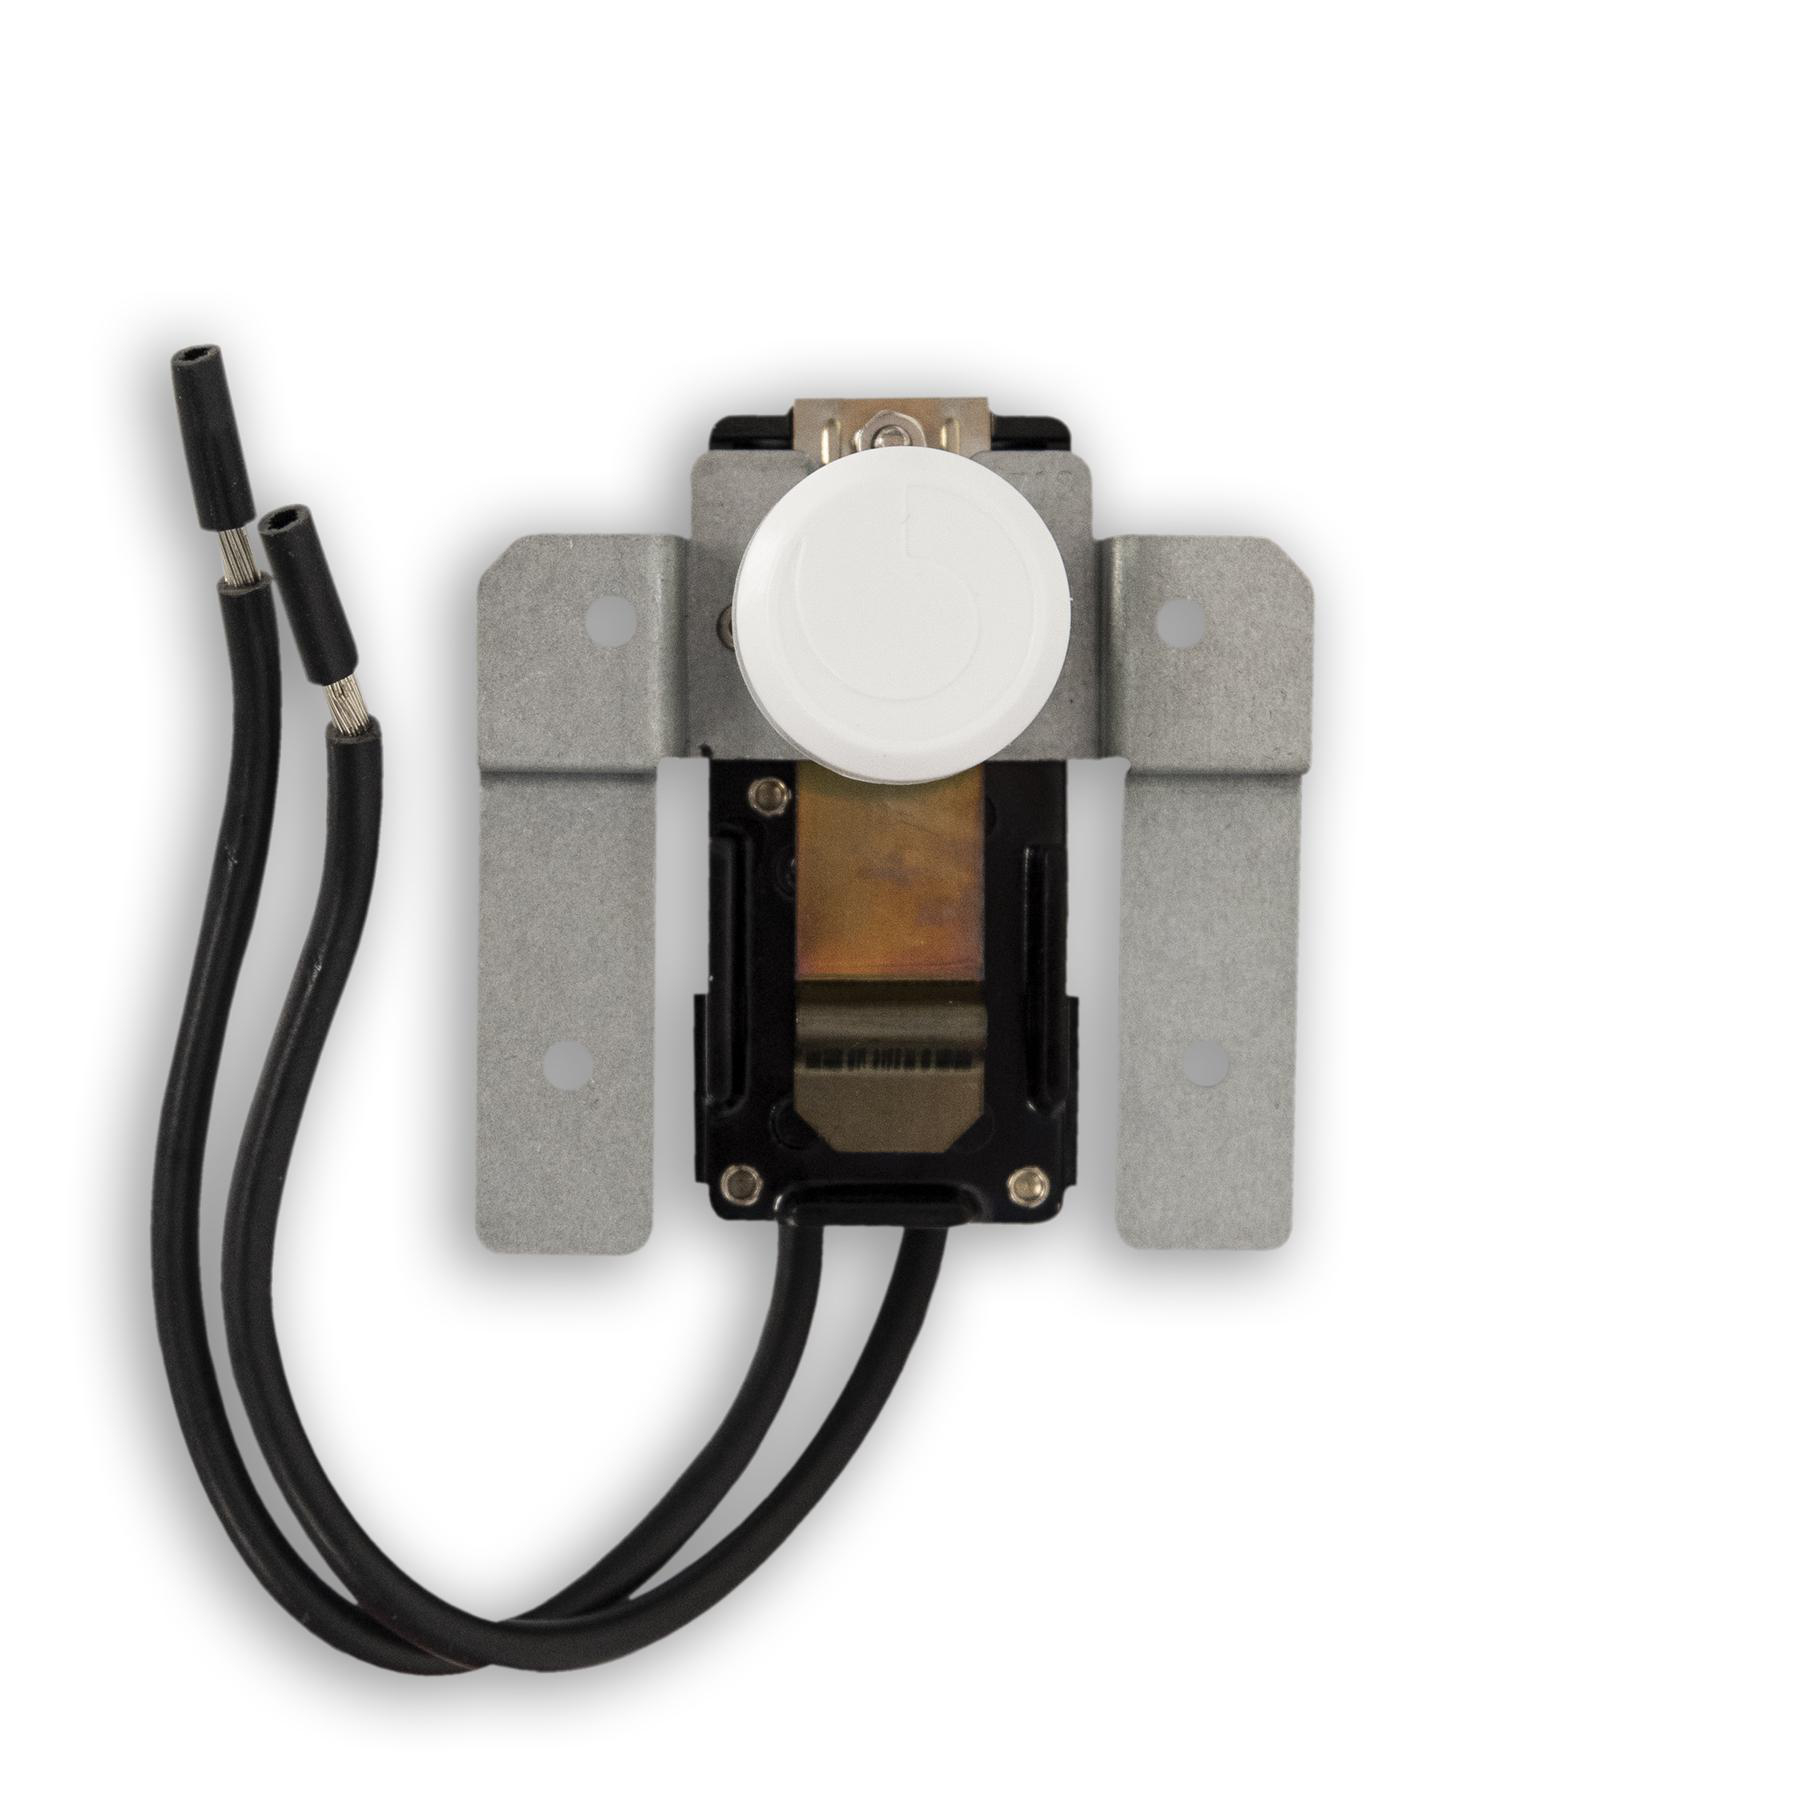 Thermostat avec sonde extérieure, blanc Ospel As RTP-1GN/m/00 - Vente en  ligne de matériel électrique